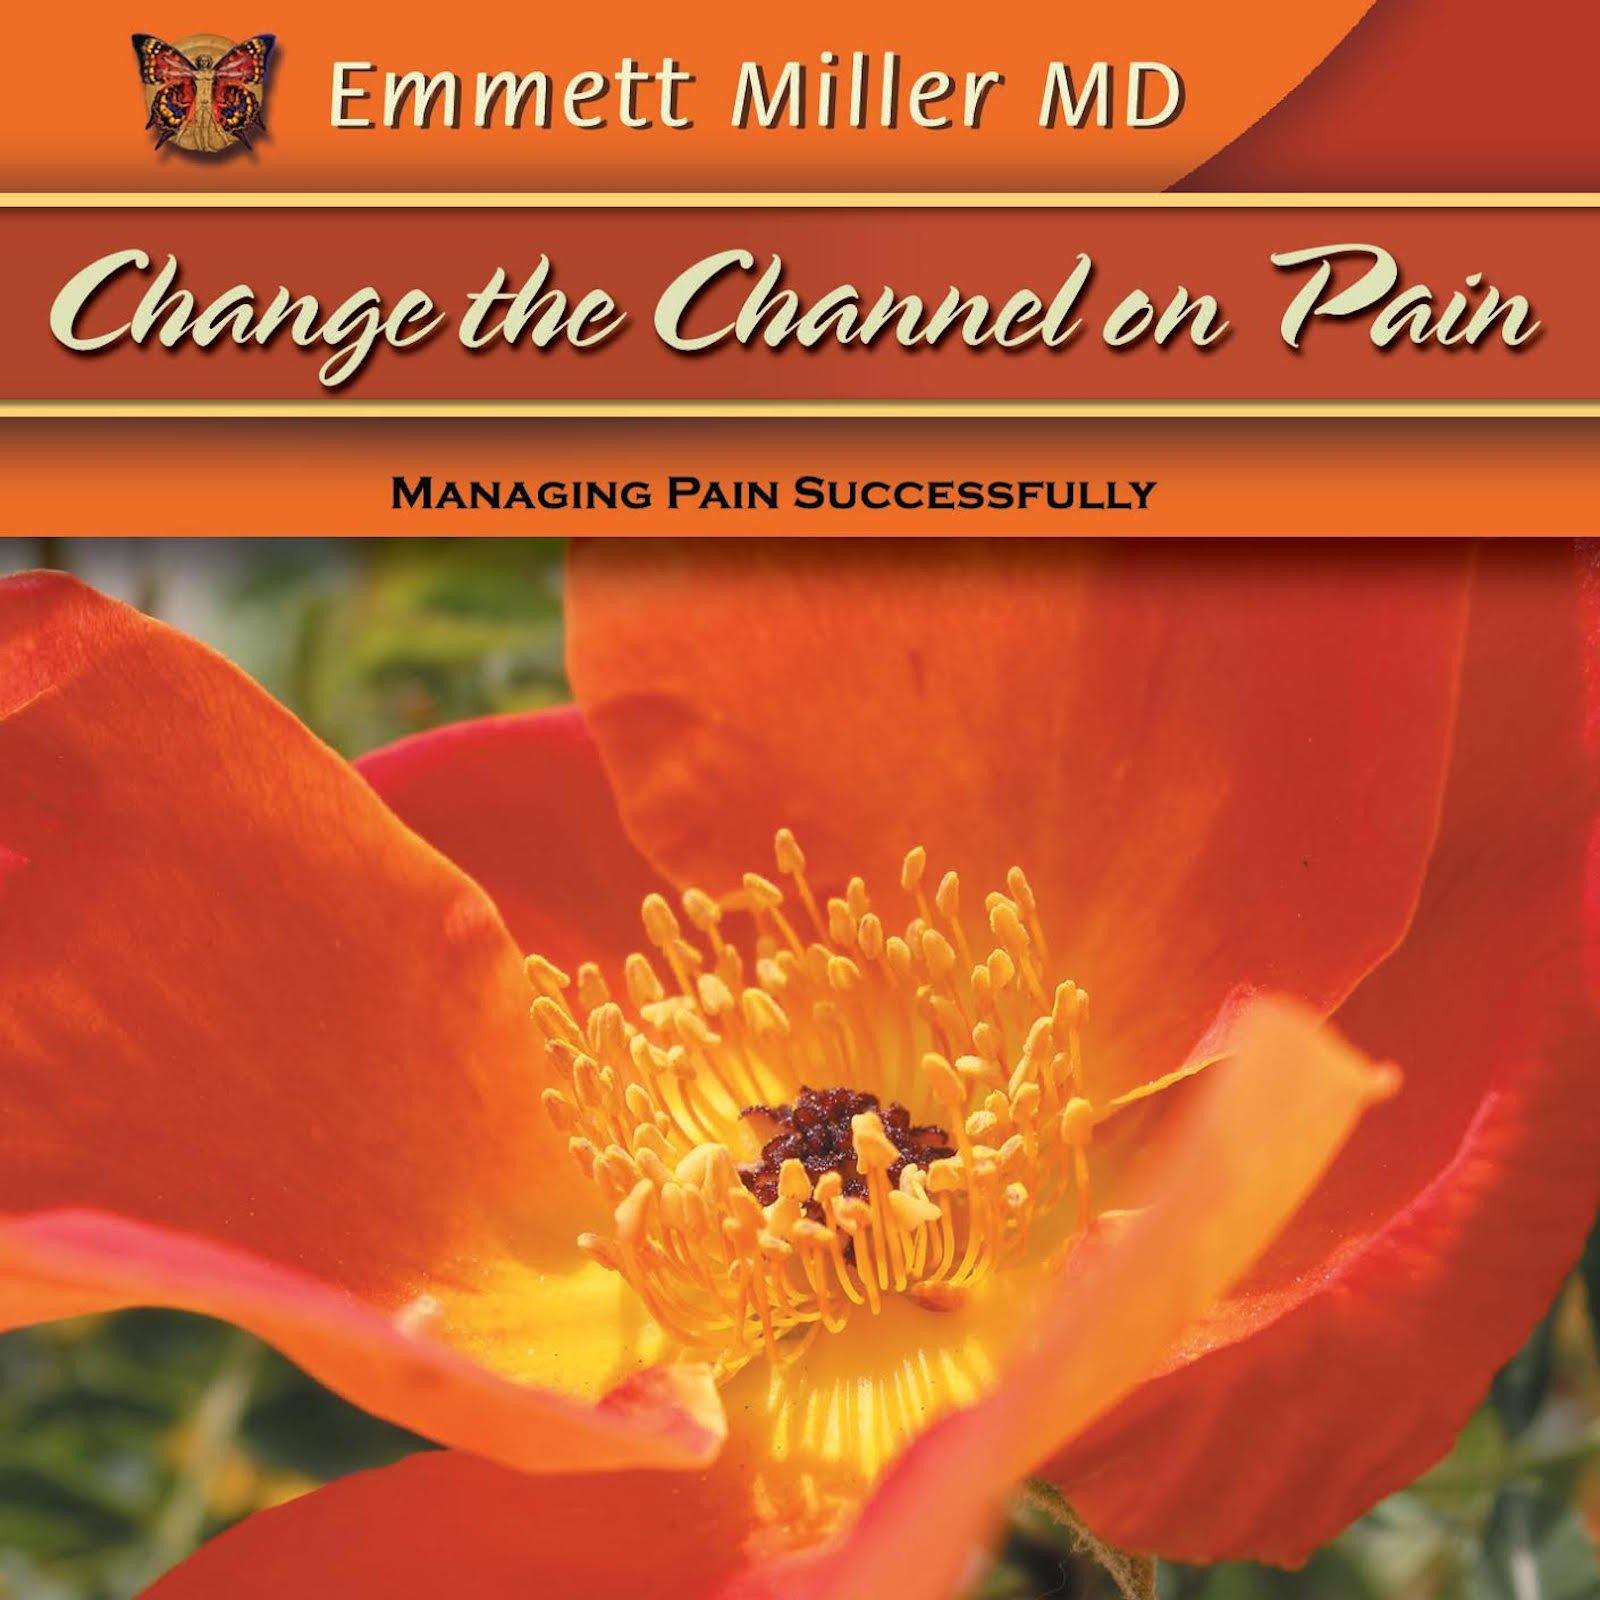 Change the Channel on Pain with Dr. Emmett Miller Audio Program Dr. Emmett Miller - BetterListen!